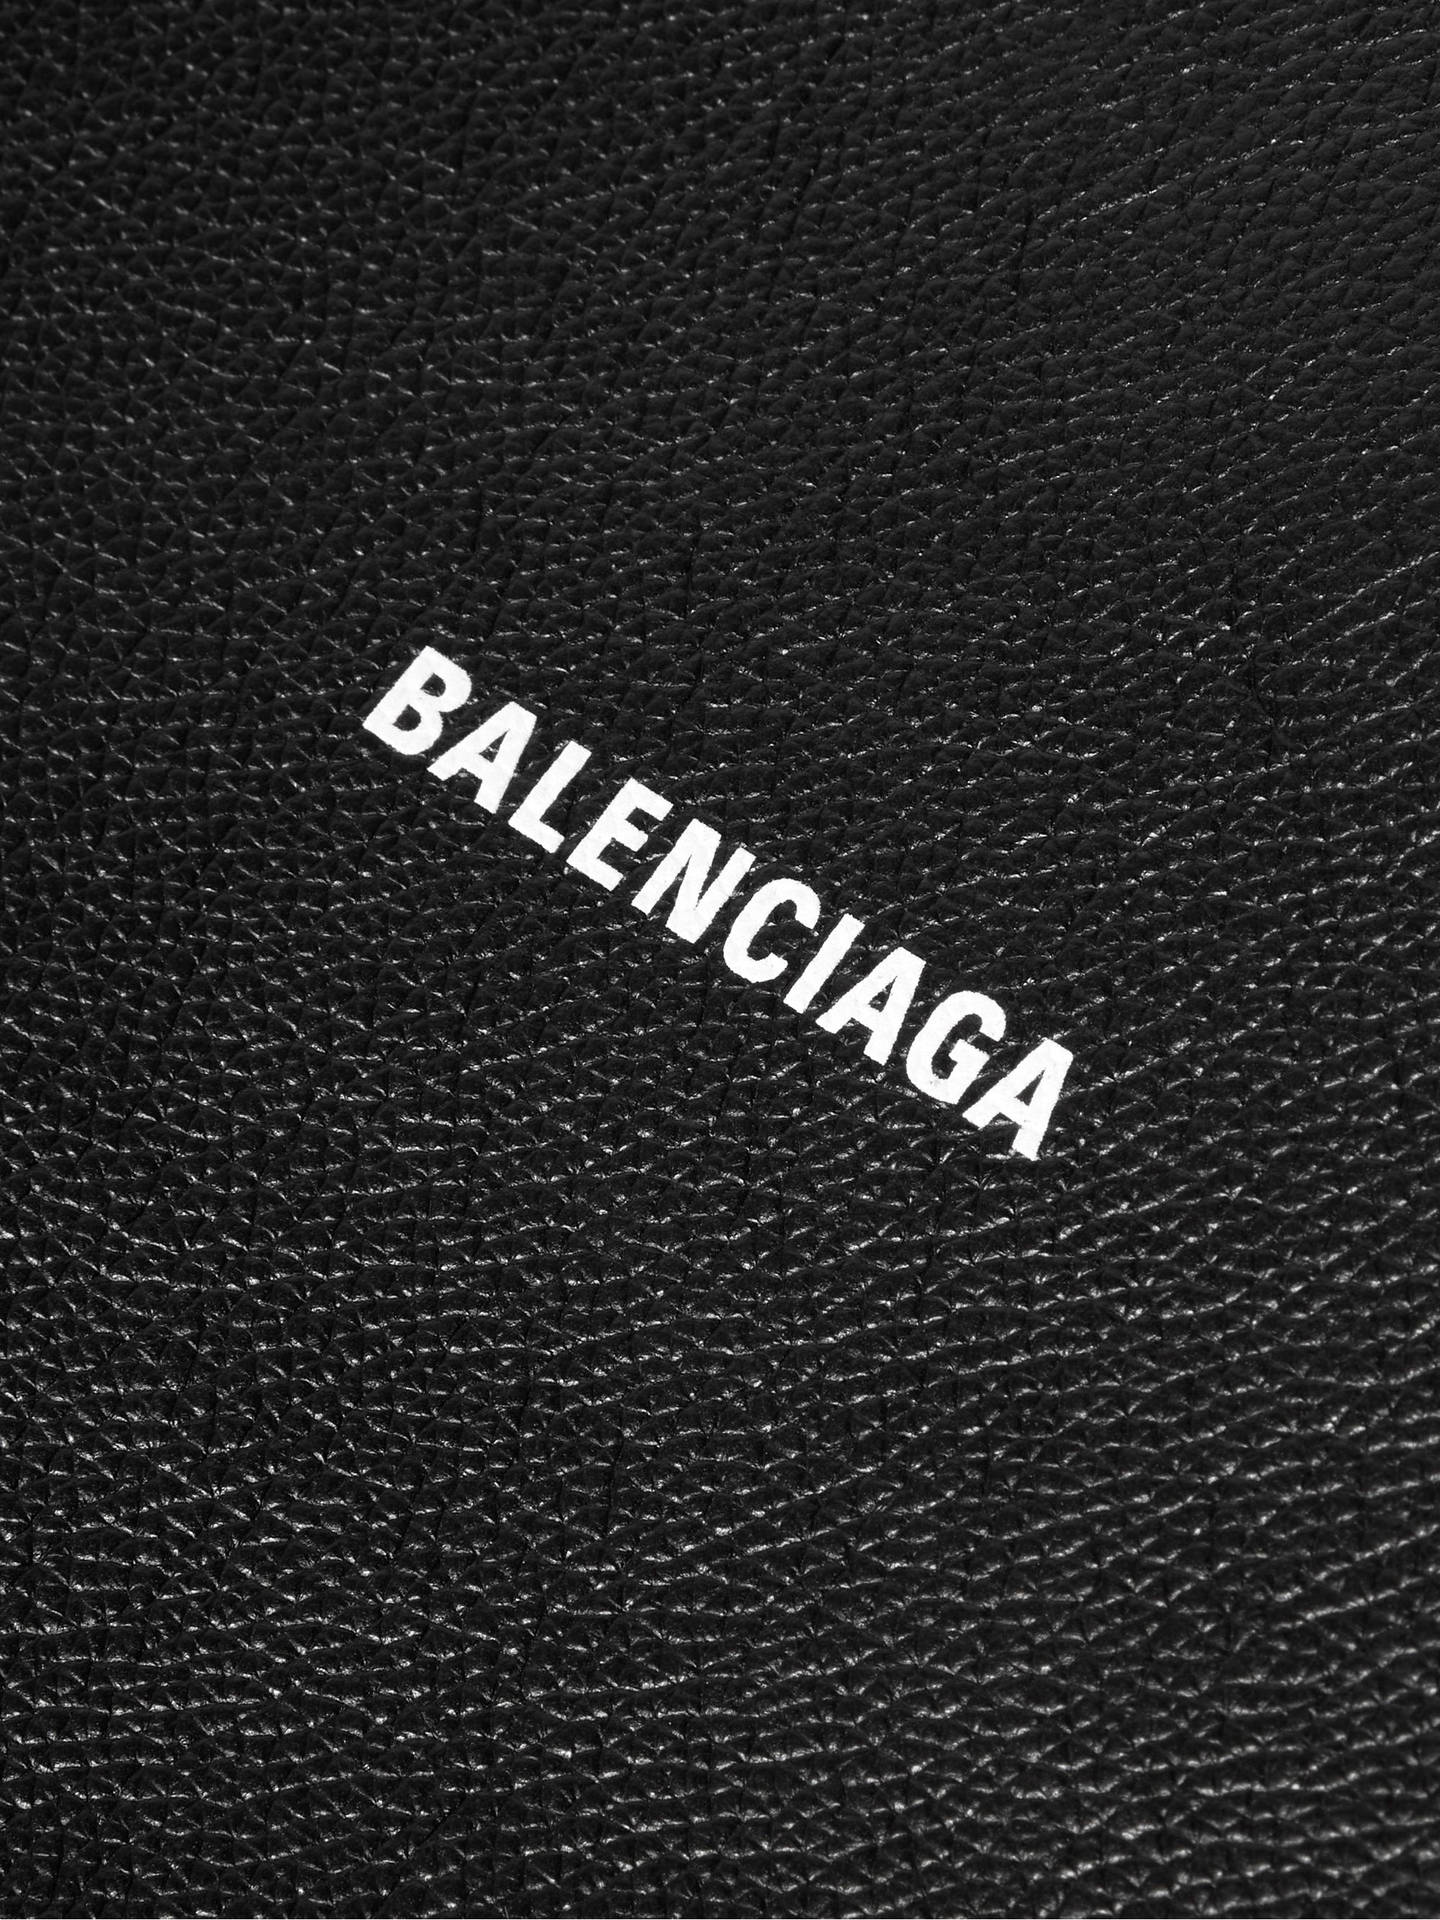 bijeenkomst personeelszaken behuizing Download Balenciaga Logo On Leather Wallpaper | Wallpapers.com